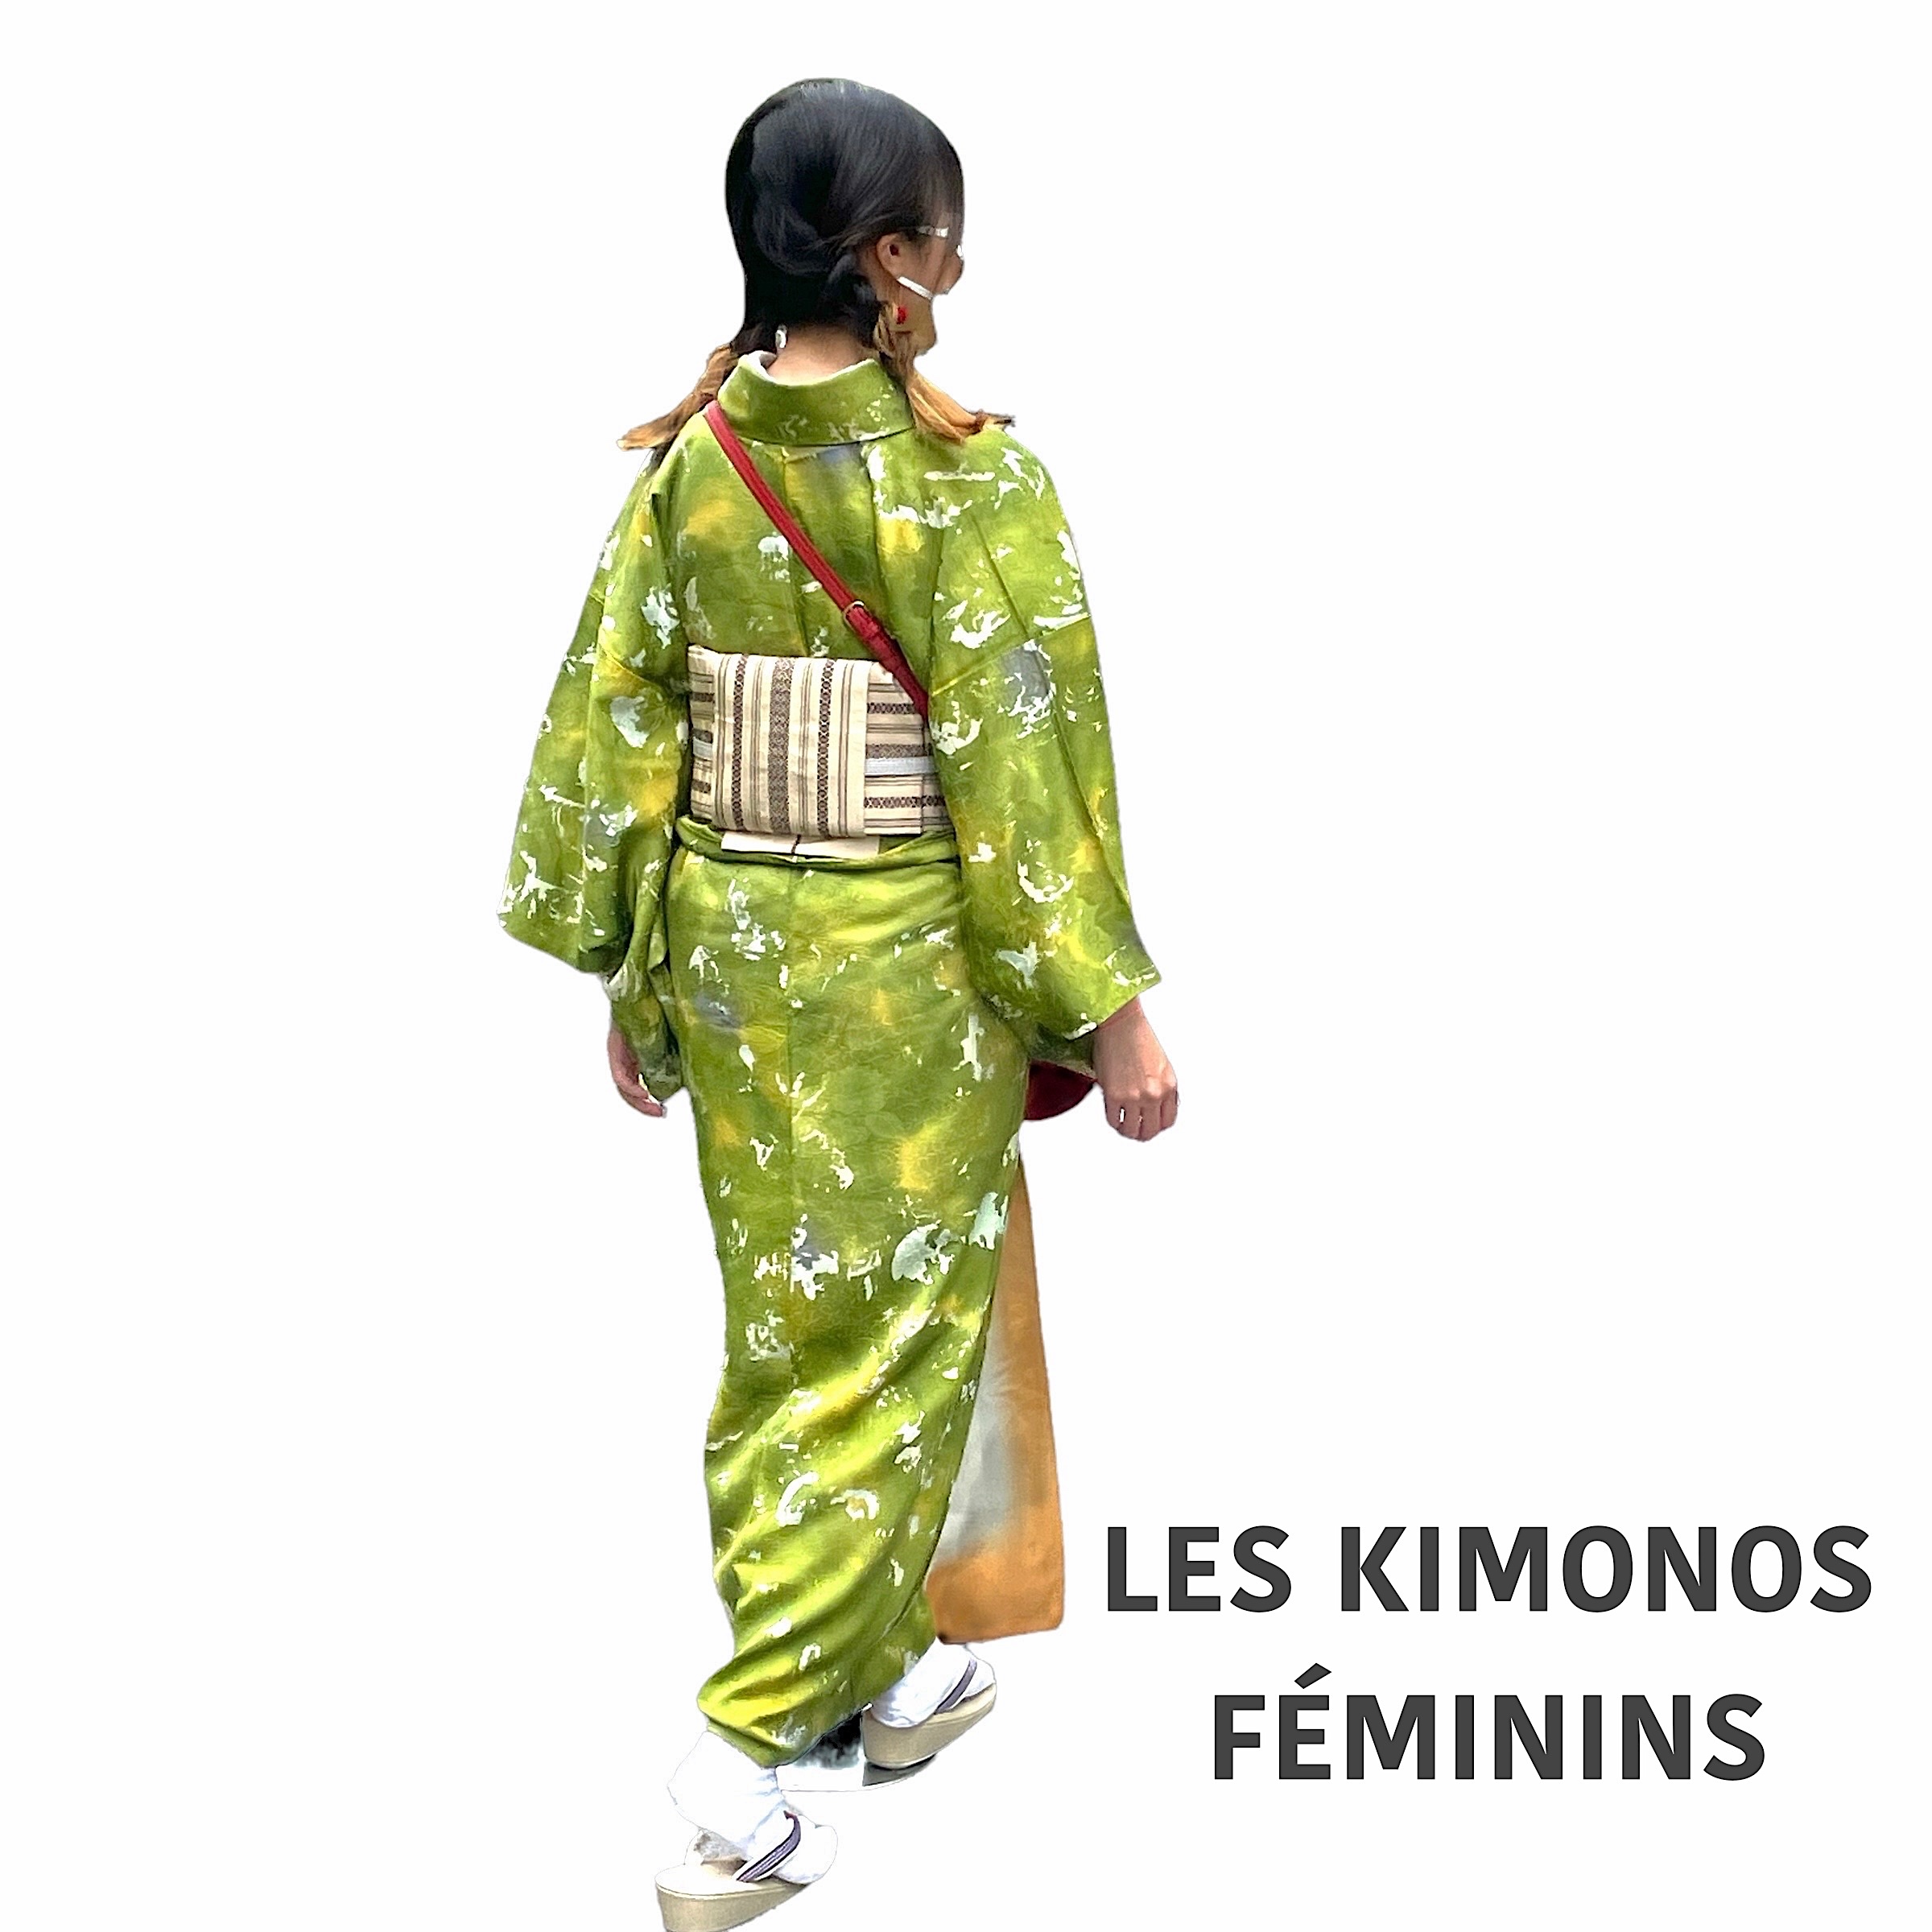 WOMEN KIMONOS